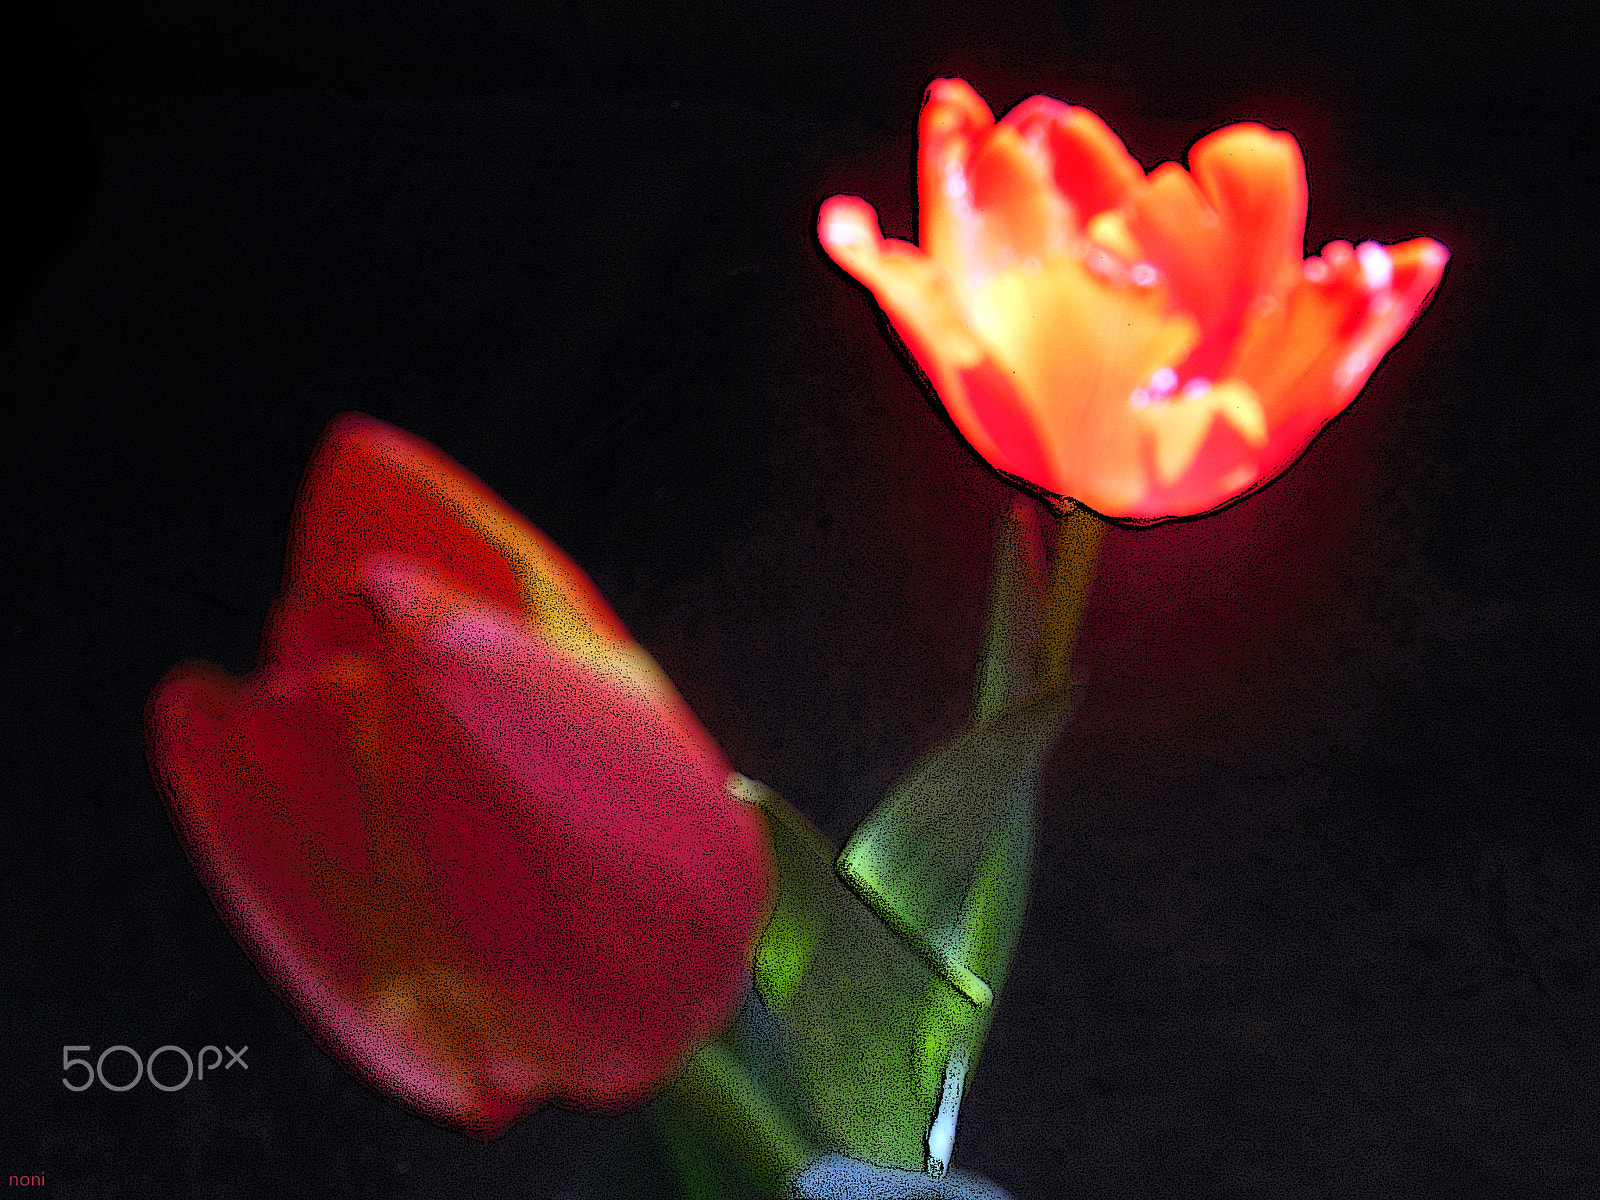 Nikon Coolpix S6300 sample photo. Tulipan photography